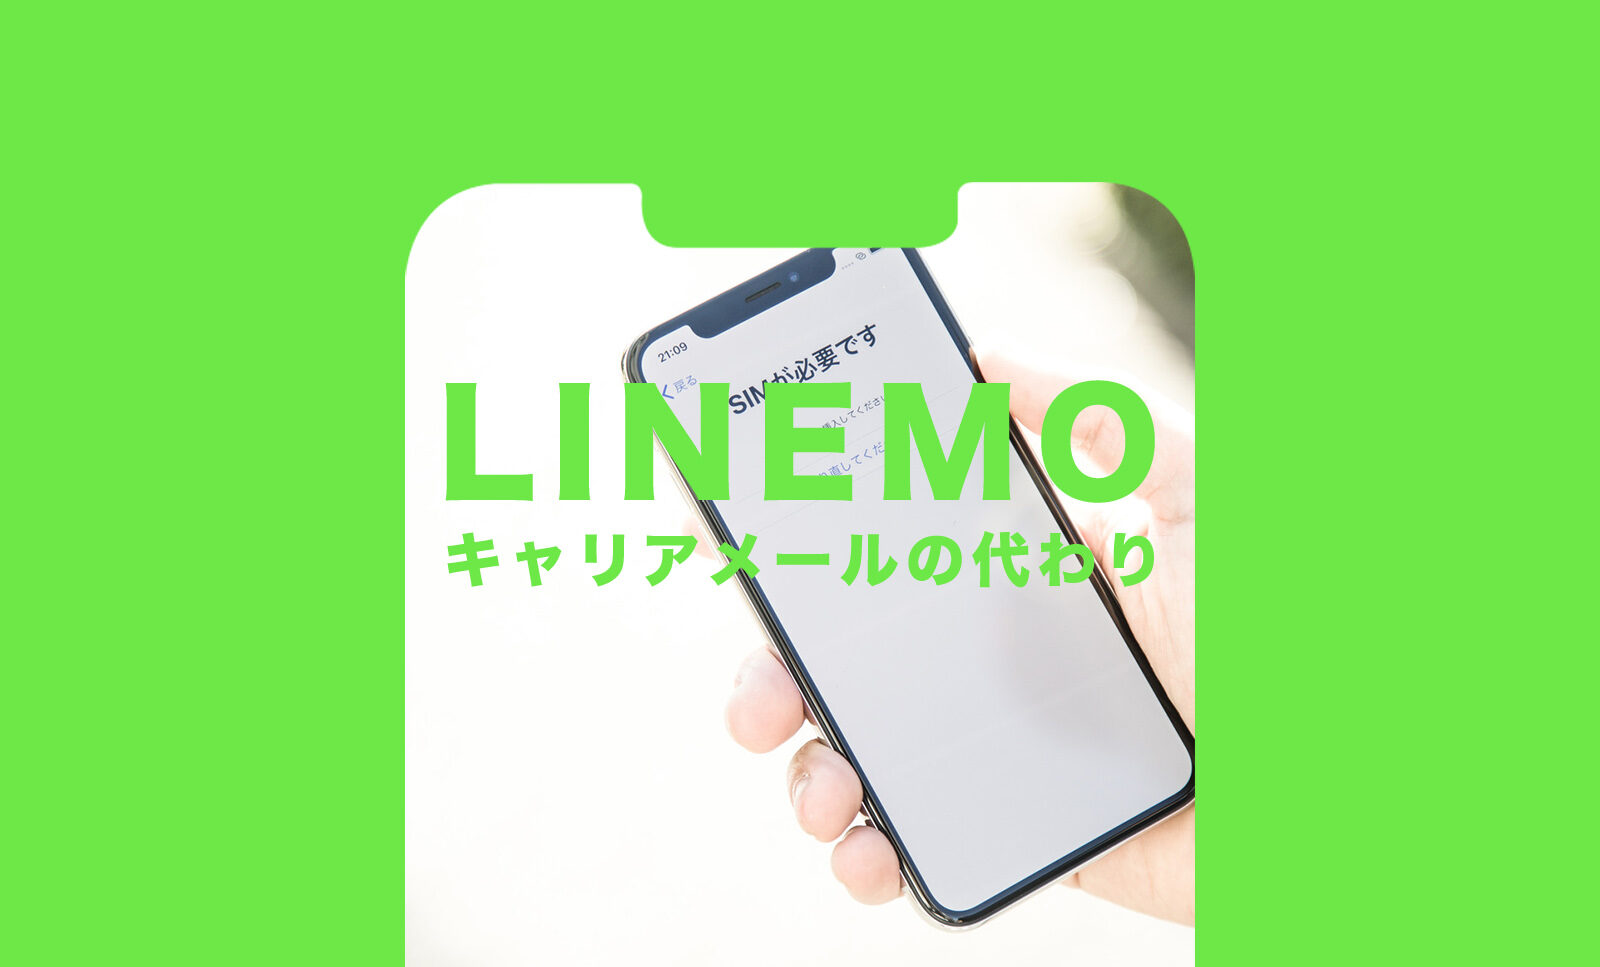 LINEMO(ラインモ)でキャリアメールの代わりのアドレスを解説！のサムネイル画像